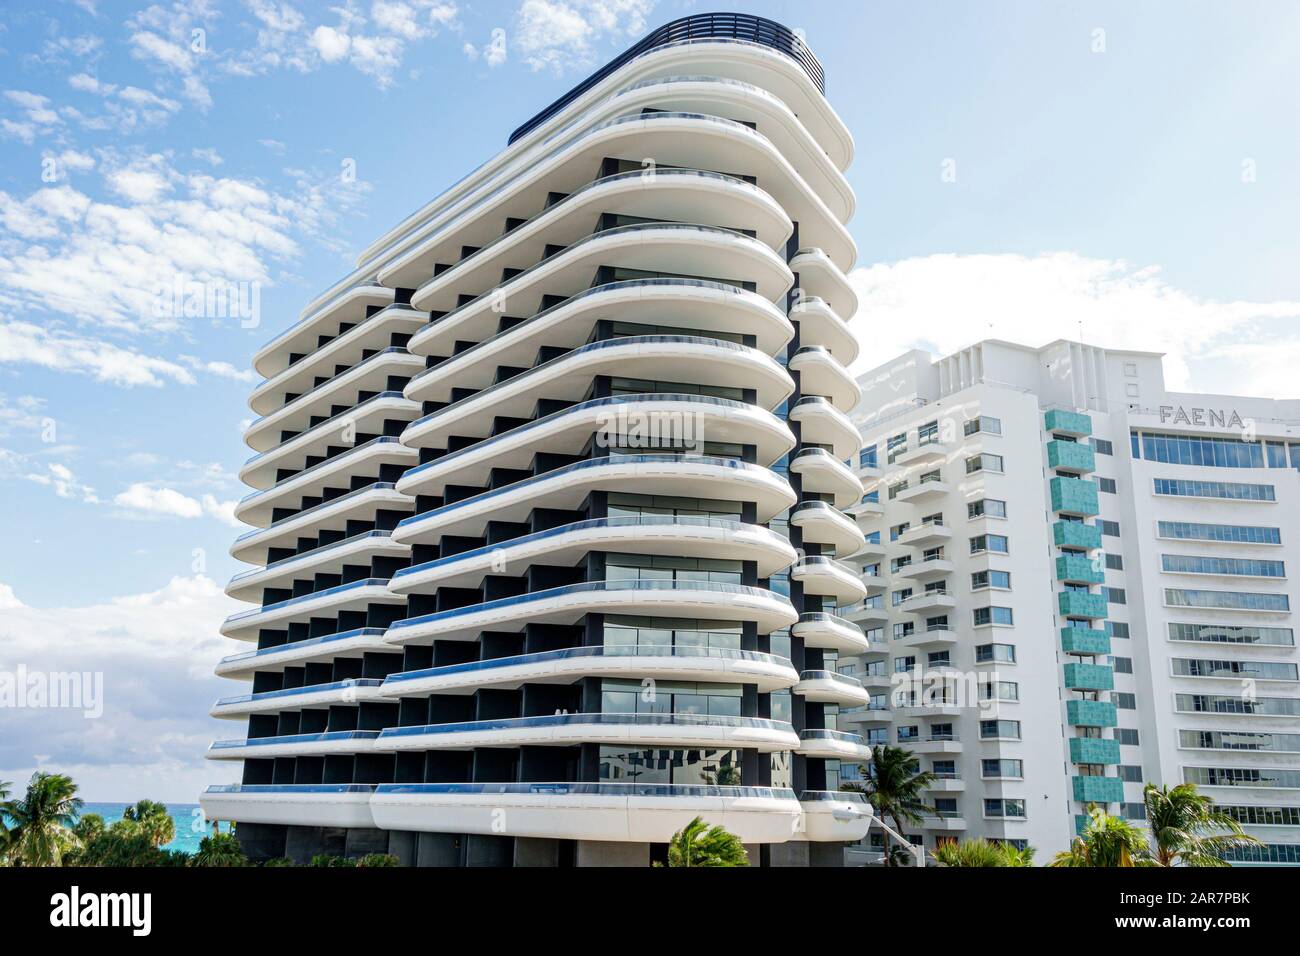 Miami Beach Florida,Collins Avenue,Faena District,residential luxury condominium,high rise,contemporary architecture,Casa Faena,historic hotel,preserv Stock Photo